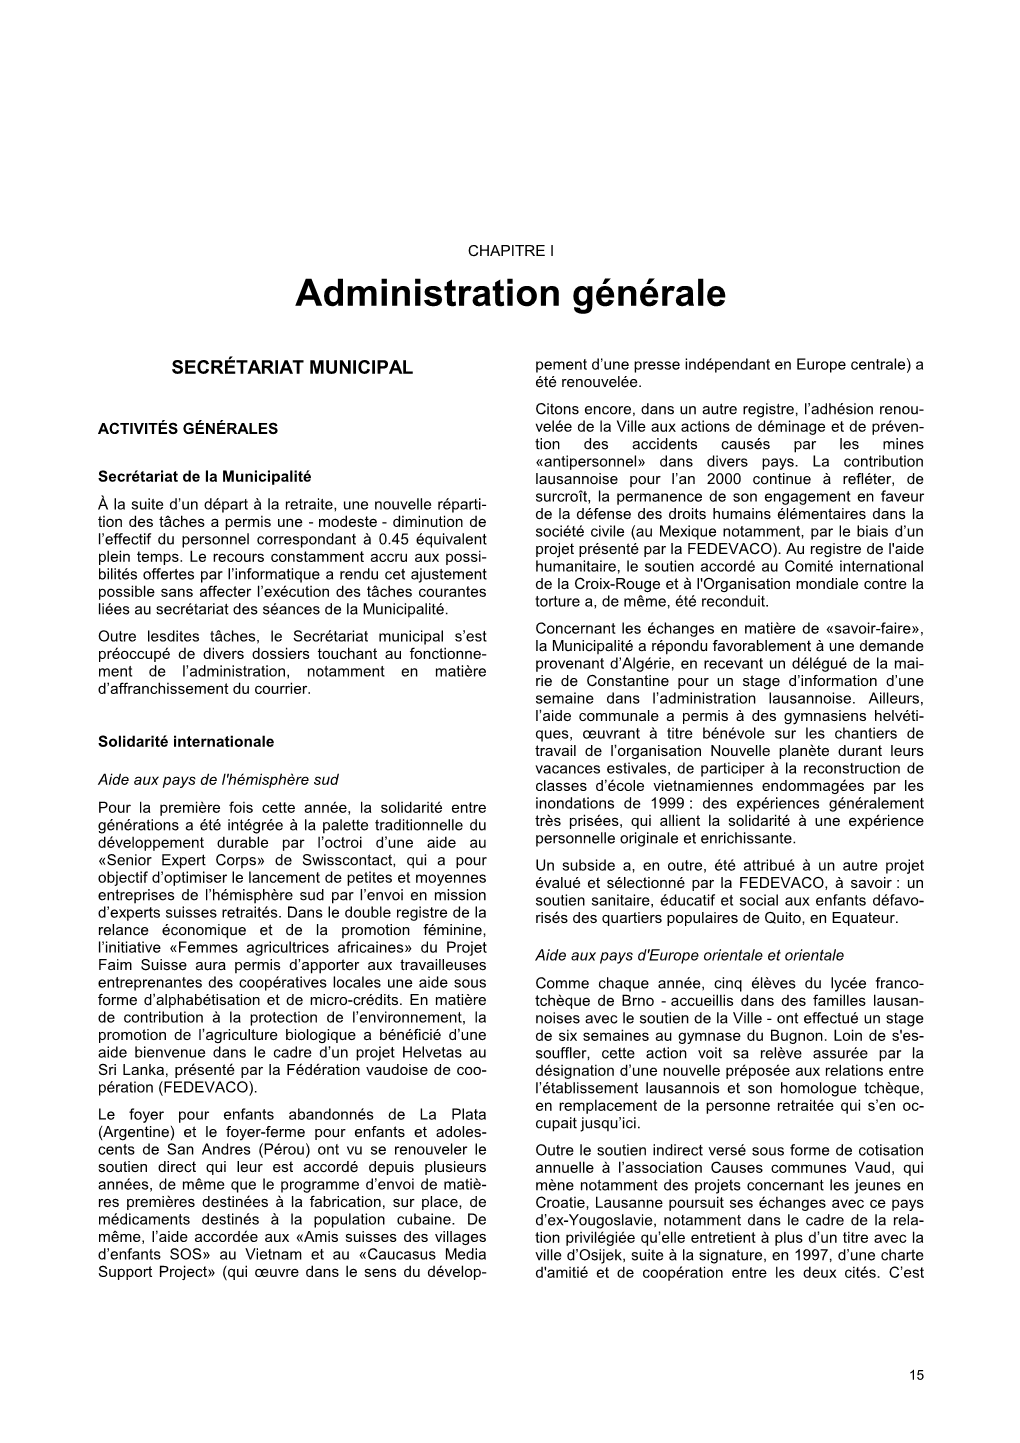 Administration Générale